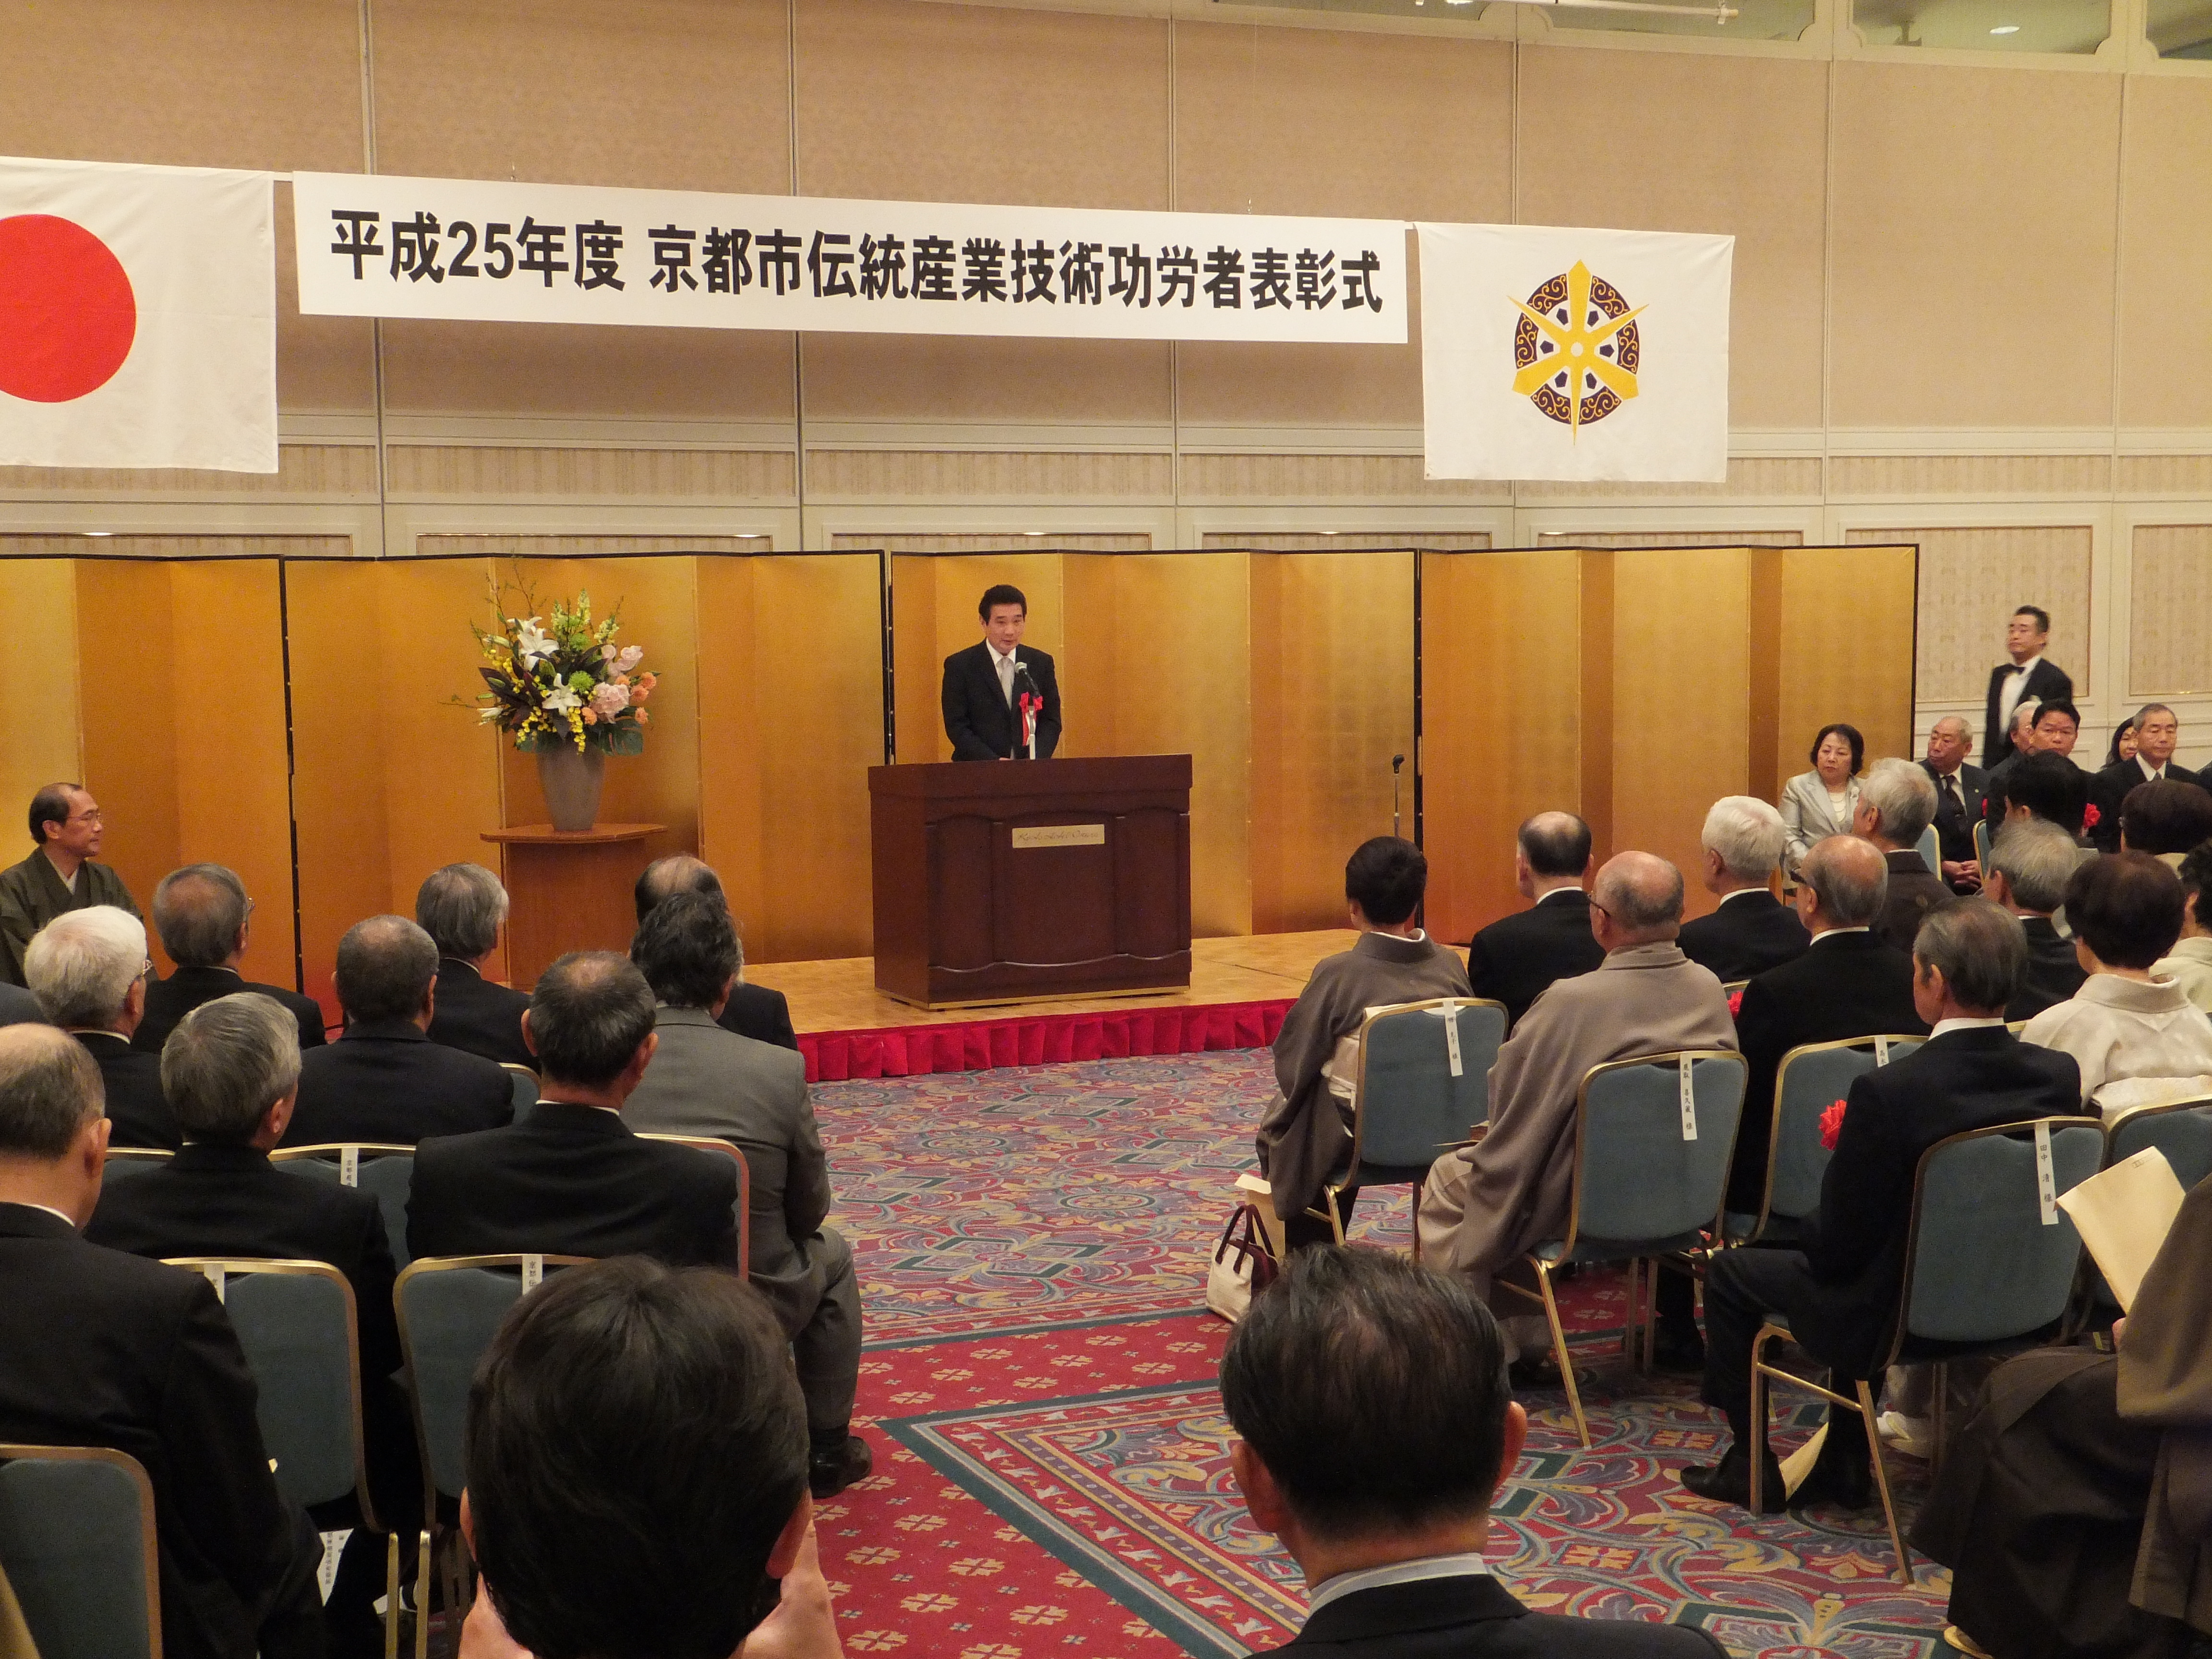 平成25年度京都市伝統産業技術功労者表彰式